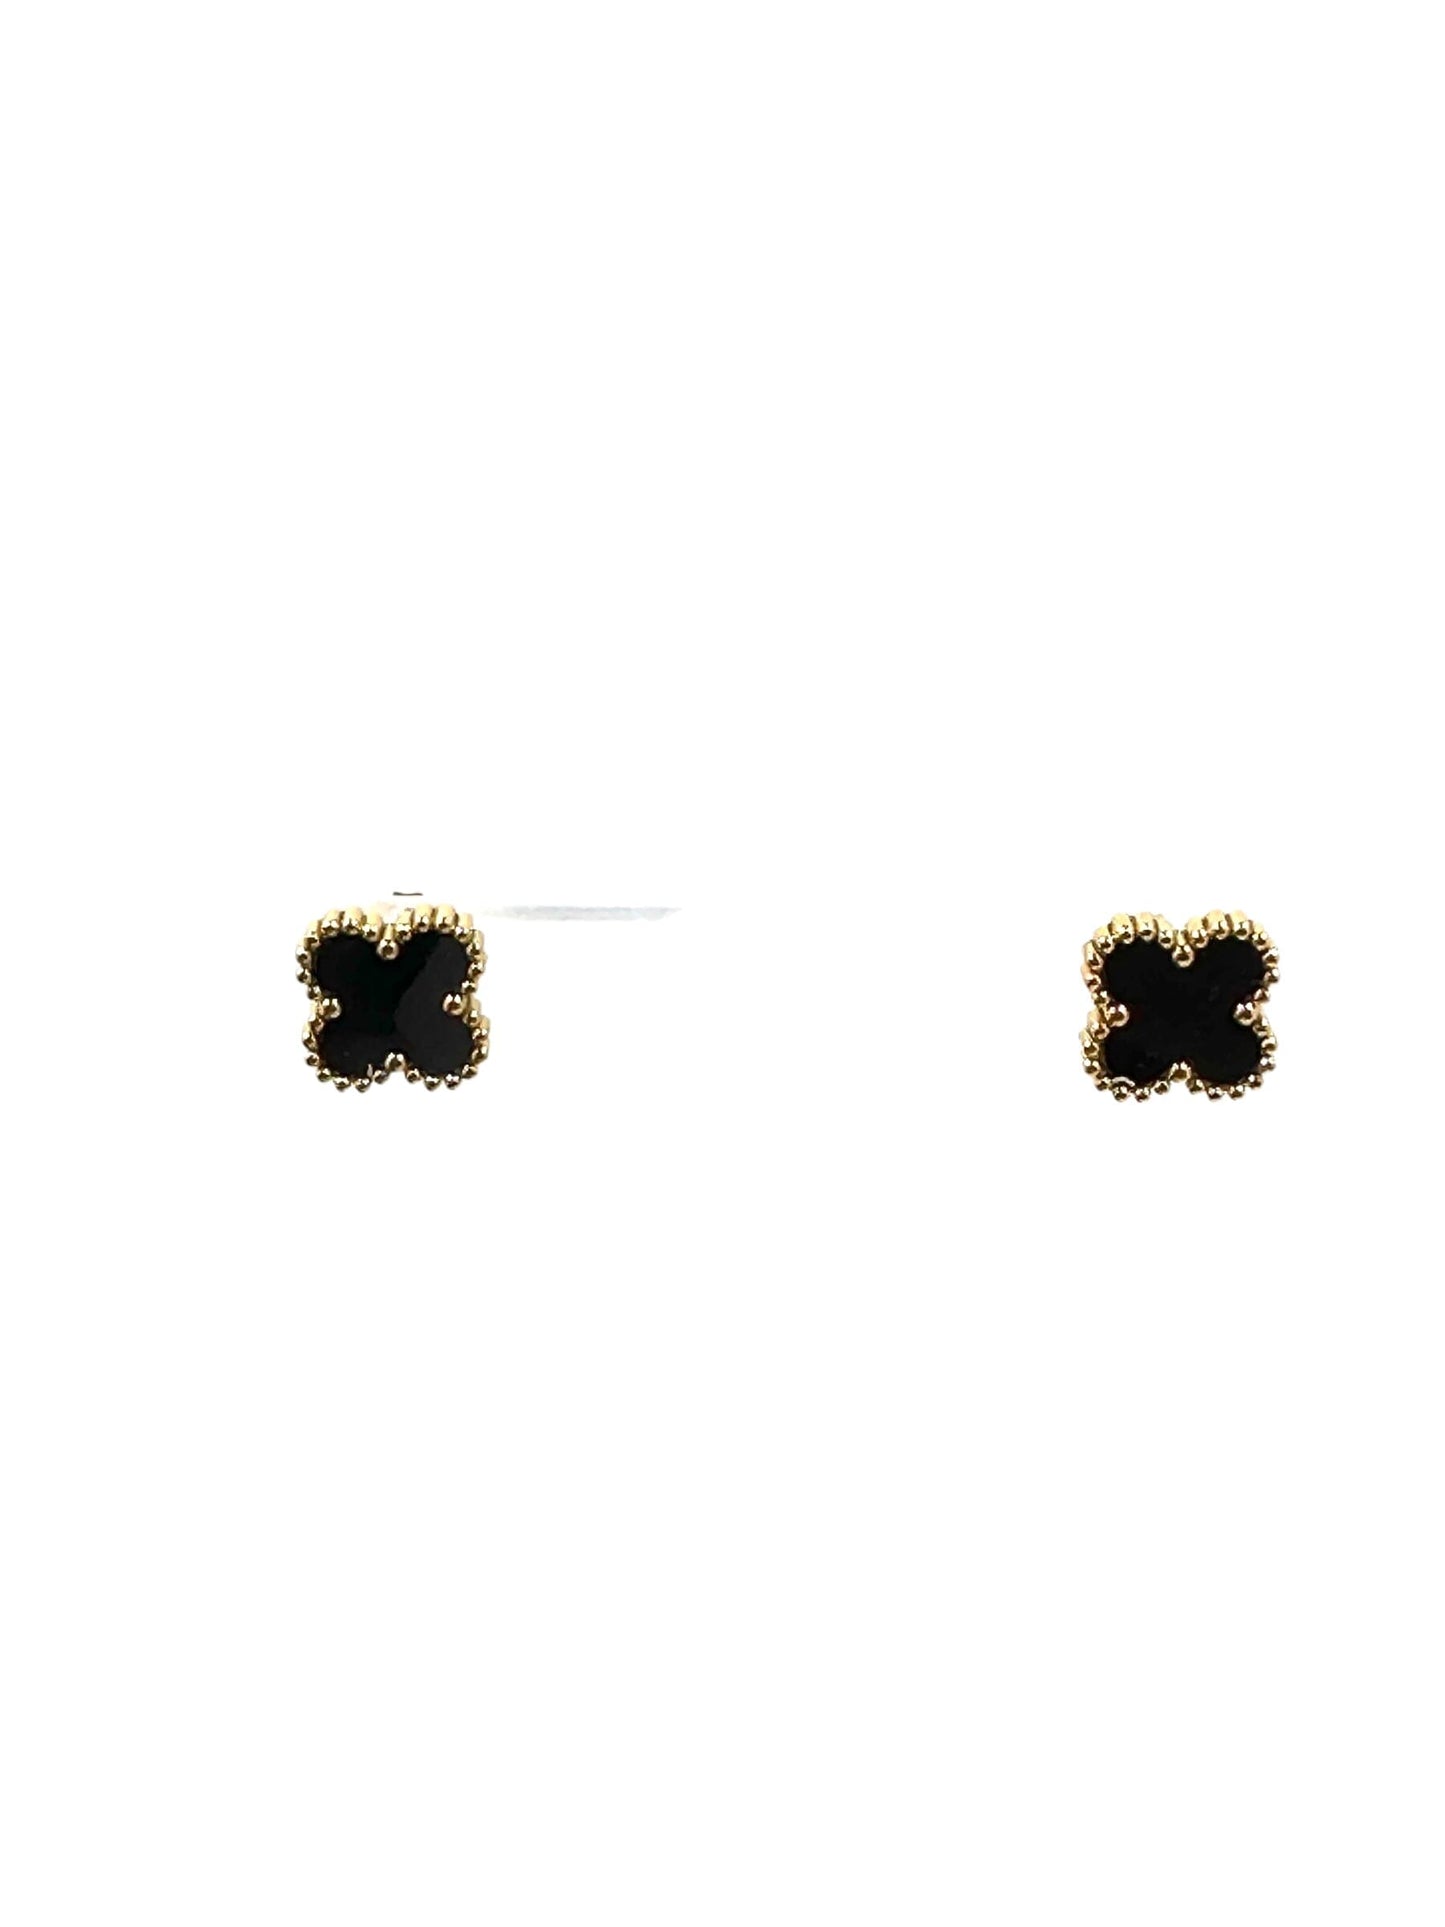 Kaitlin Flower Clover Earrings Earrings Trendzio Jewelry Black 